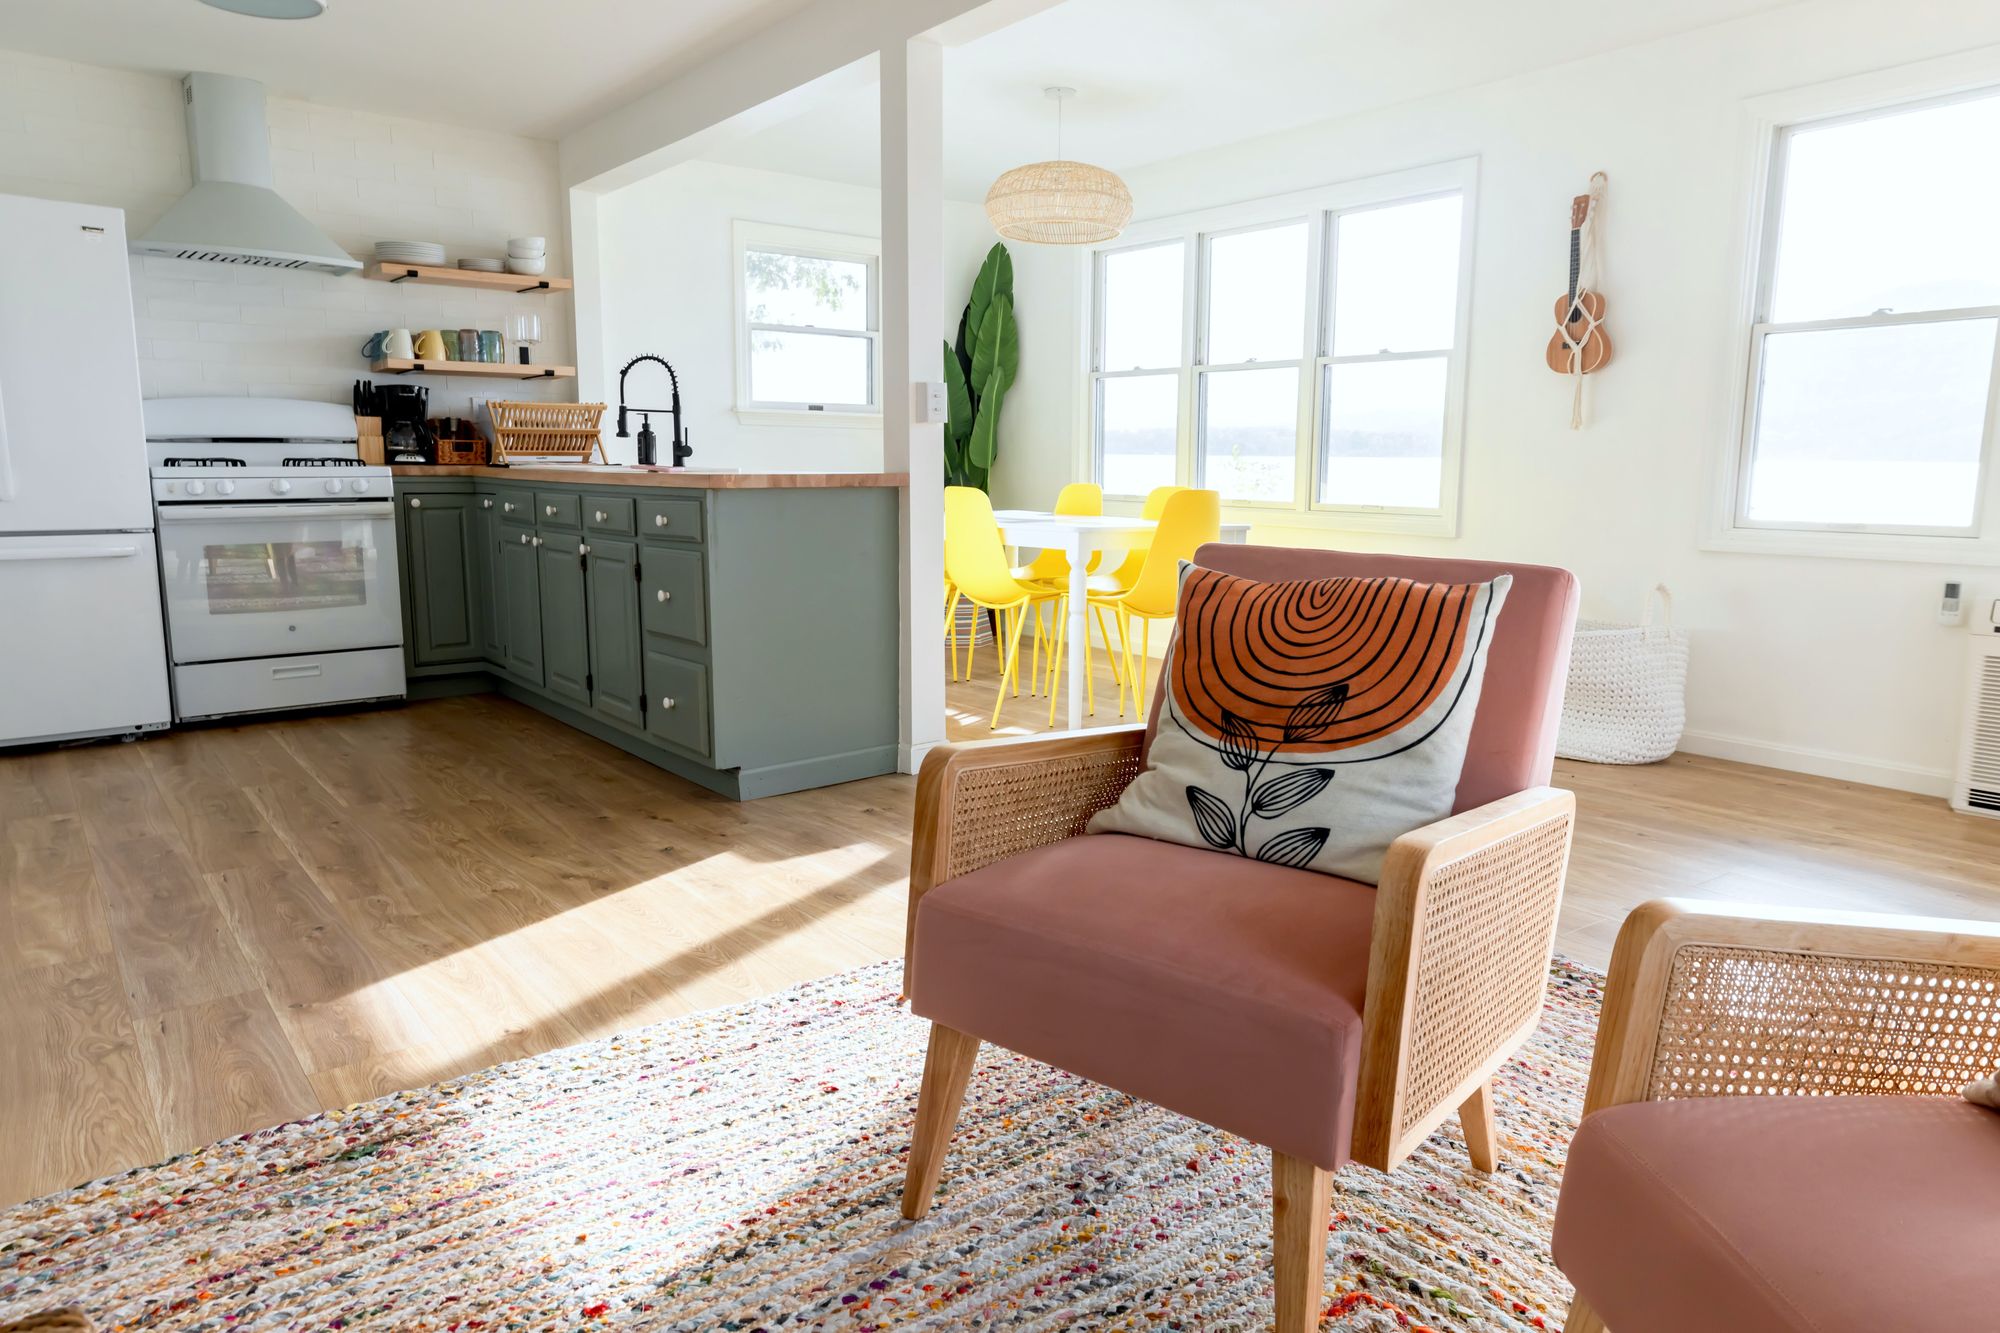 Interior de uma casa pequena com ambientes integrados, mostrando uma cozinha moderna com armários em tom verde-oliva e eletrodomésticos brancos. Foto: Andrea Davis / Pexels